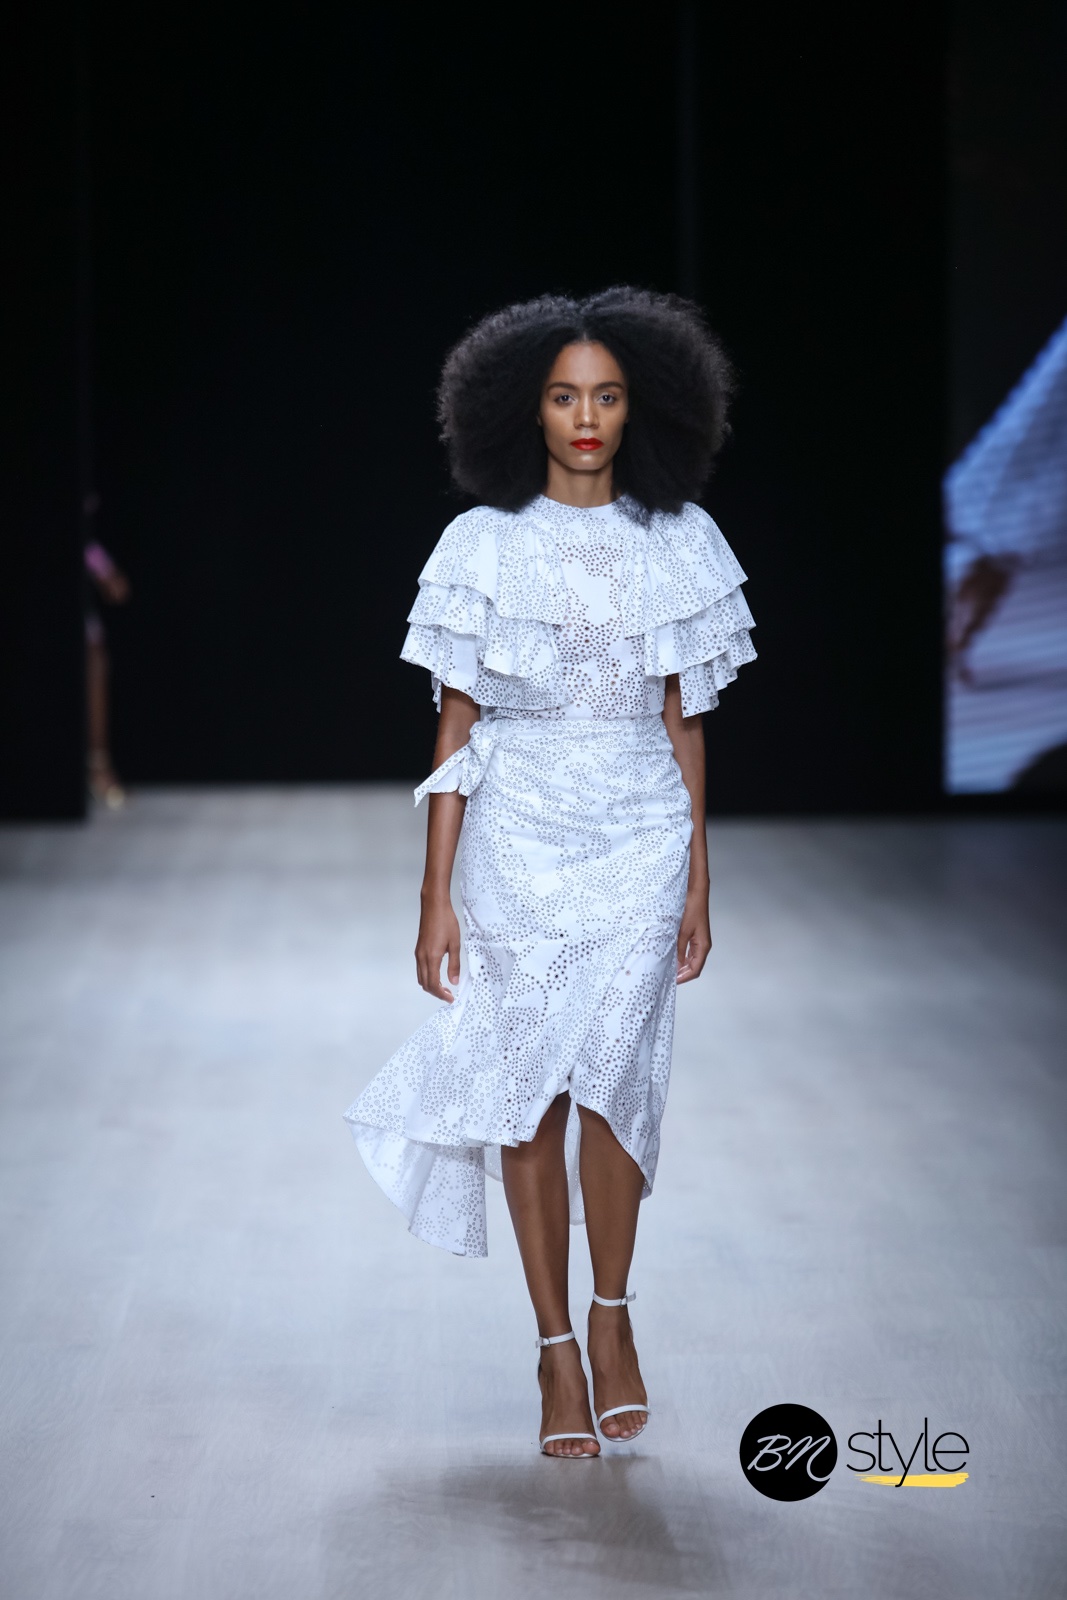 ARISE Fashion Week 2019 | Turfah